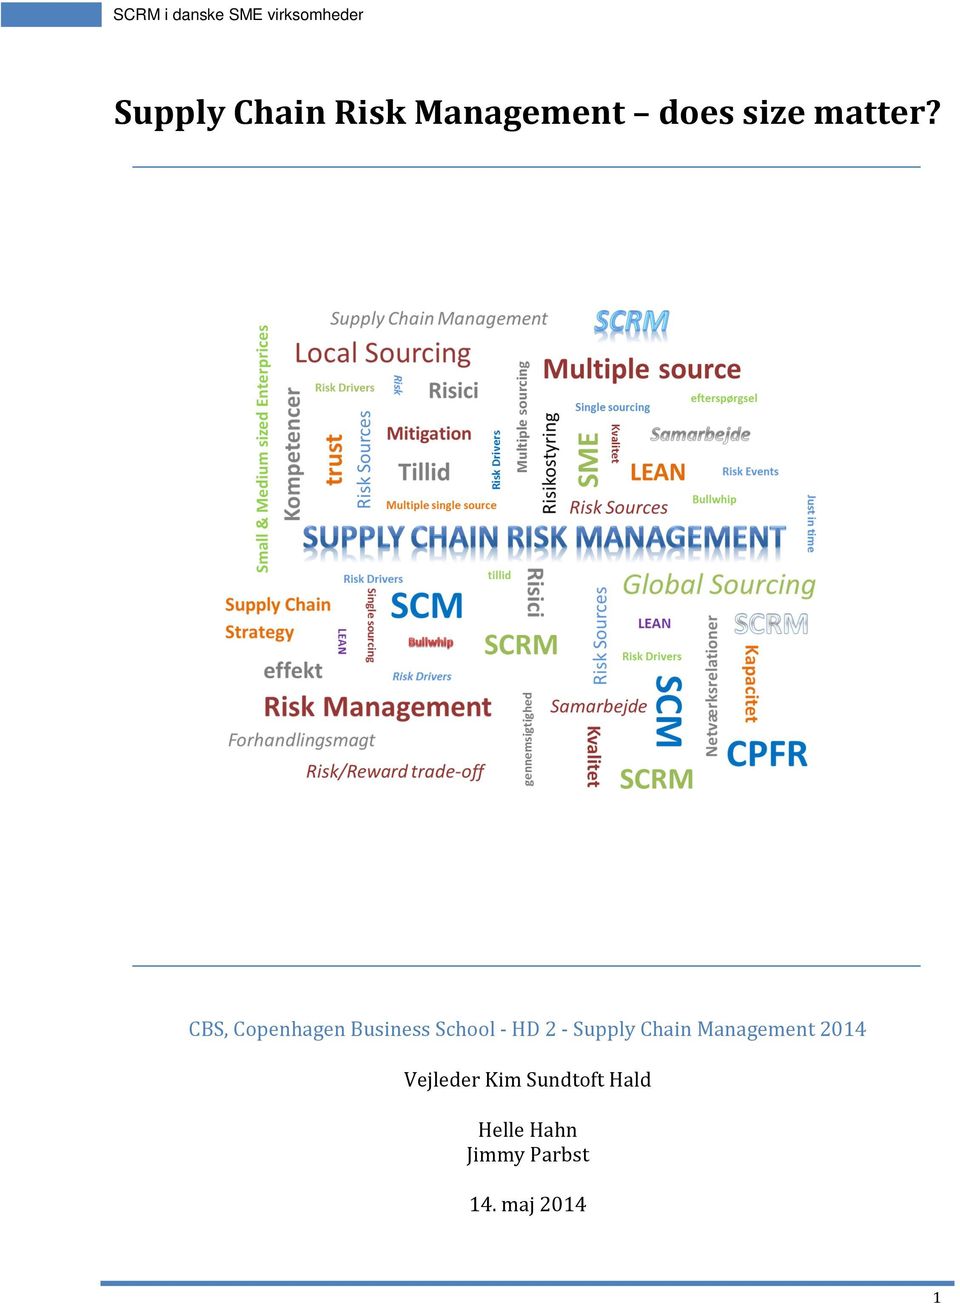 Supply Chain Management 2014 Vejleder Kim